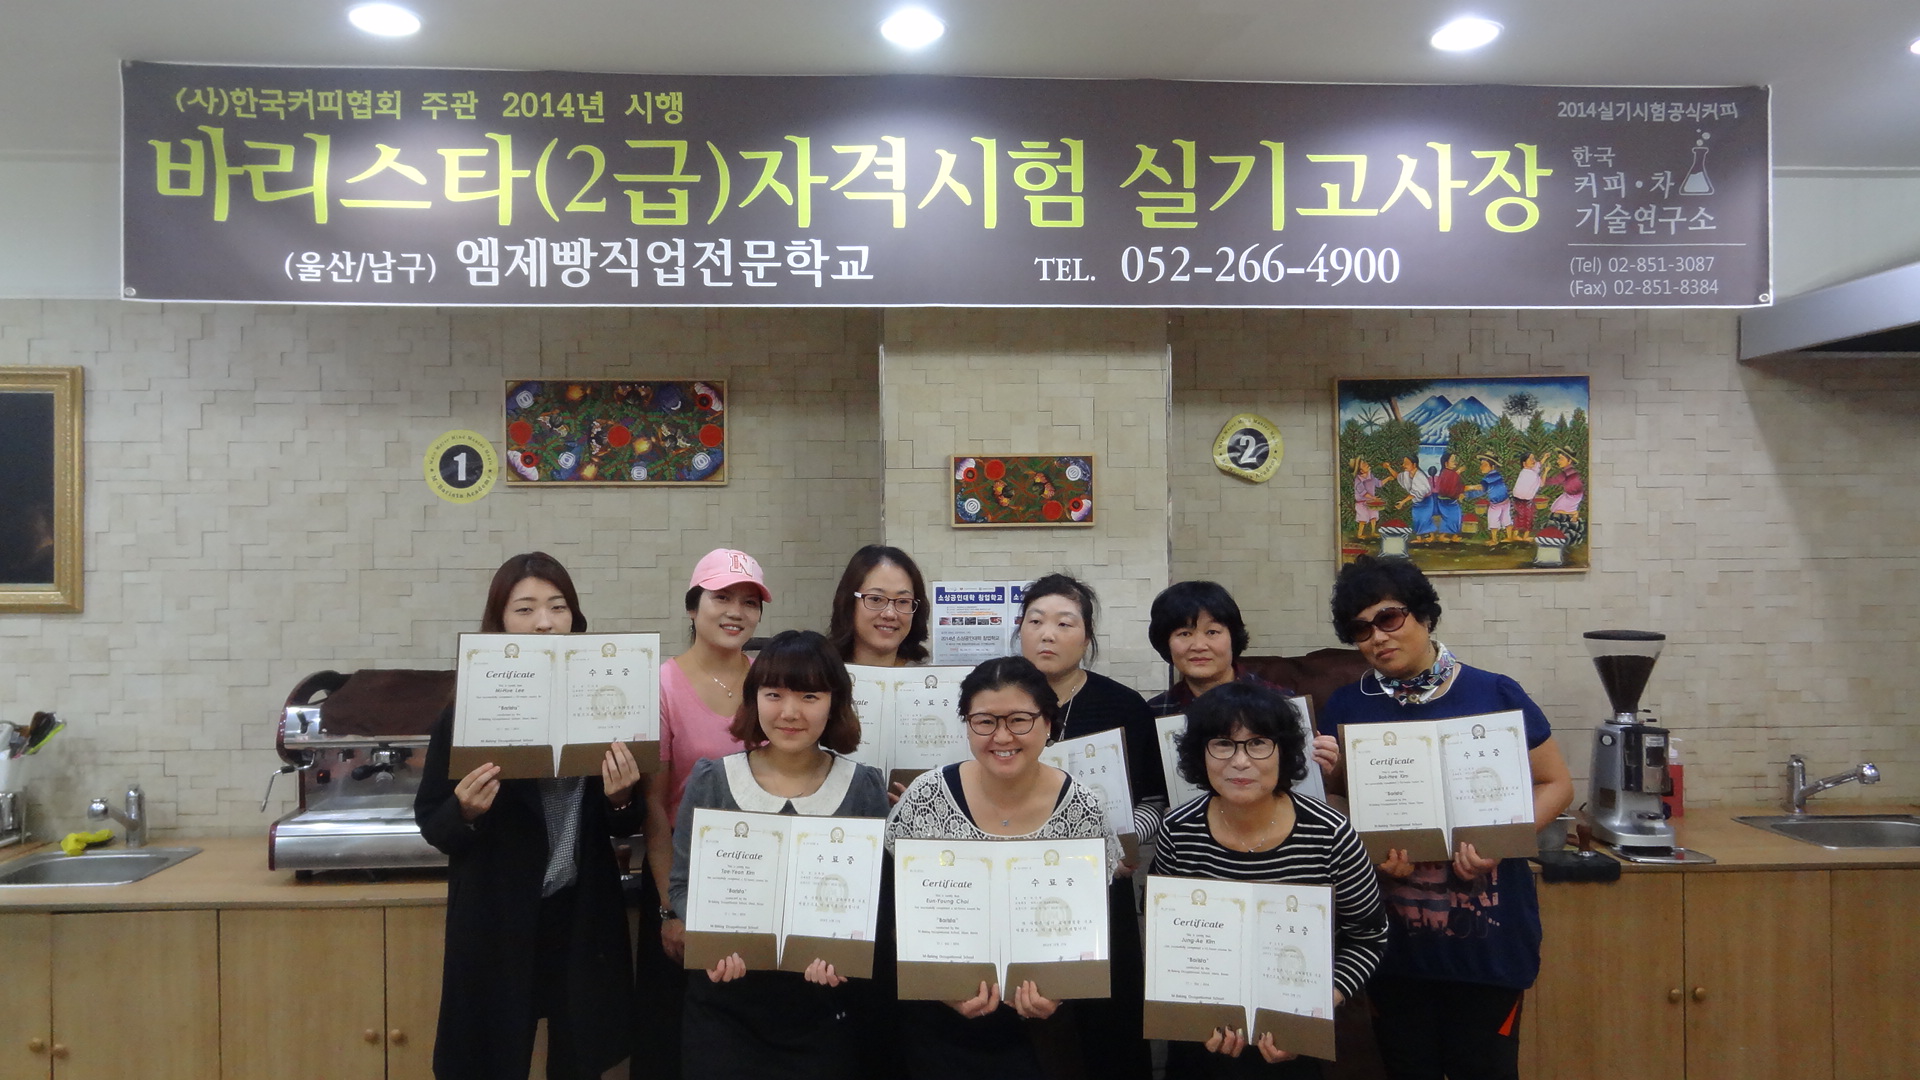 2014년도 여성장애인교육사업 '커피아카데미' 수강생 단체 사진